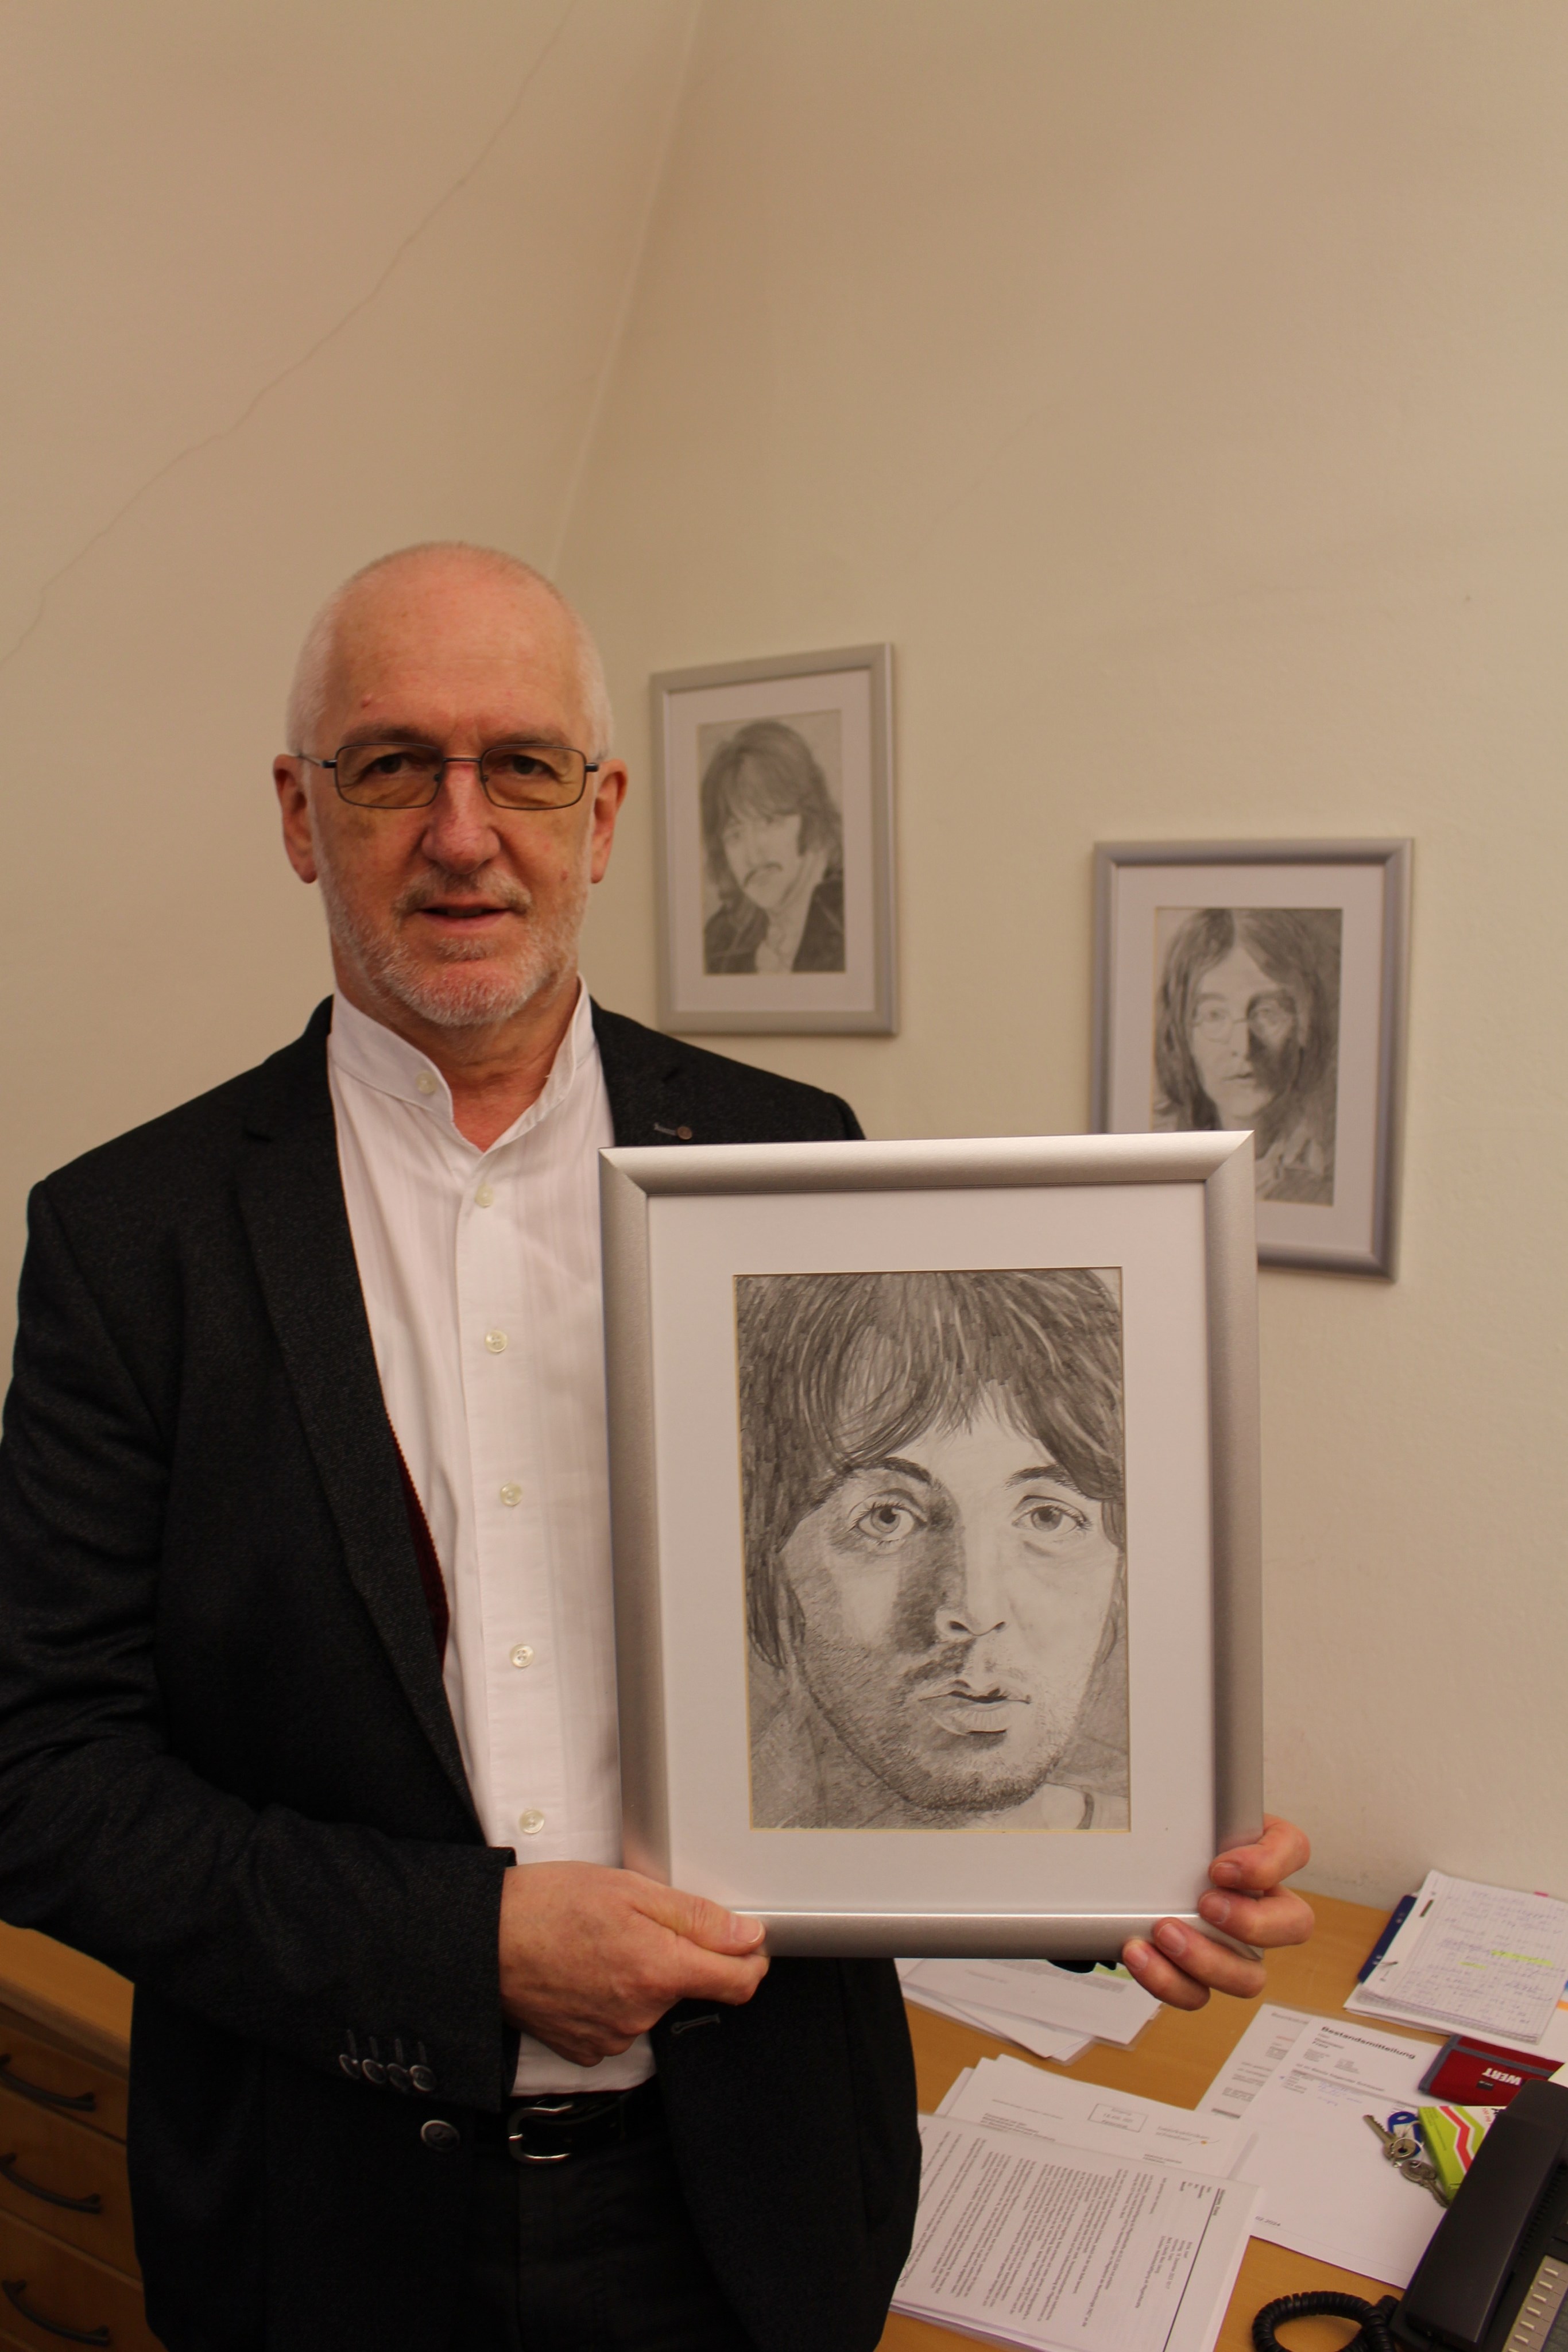 Franz Hörmann mit einem selbstgezeichneten Bild von Paul McCartney, das in seinem Büro hing - Foto: Georg Schalk, Bezirkskliniken Schwaben